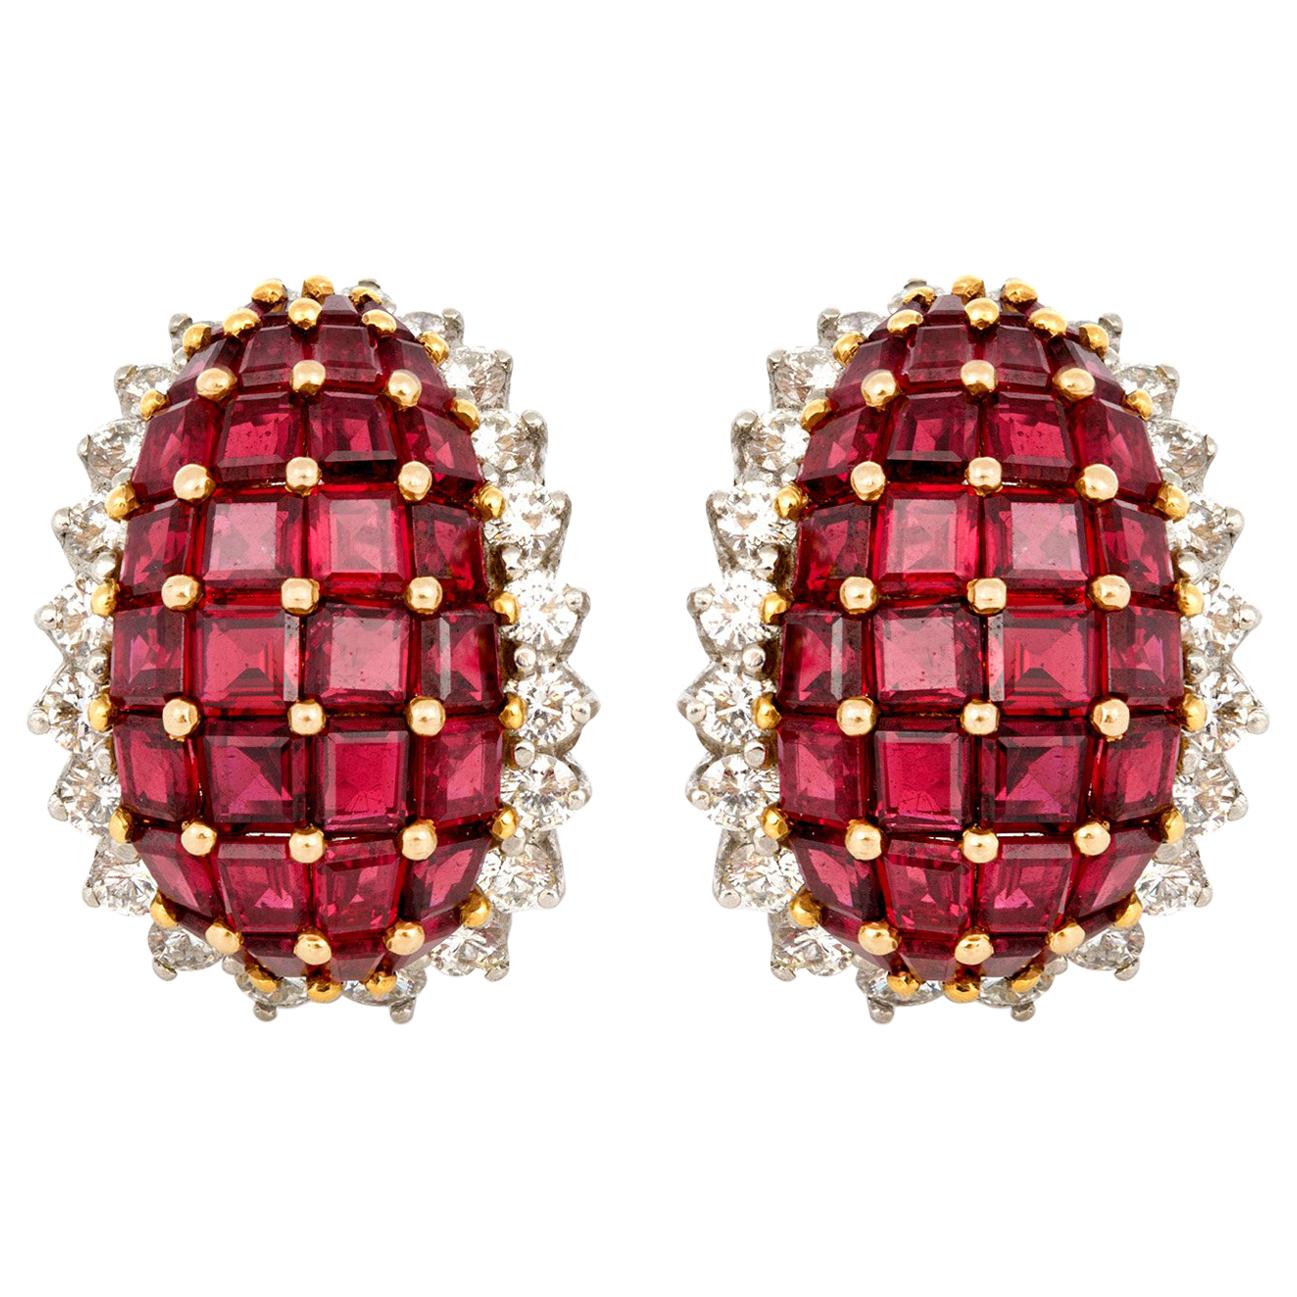 Oscar Heyman Ruby and Diamond Earrings